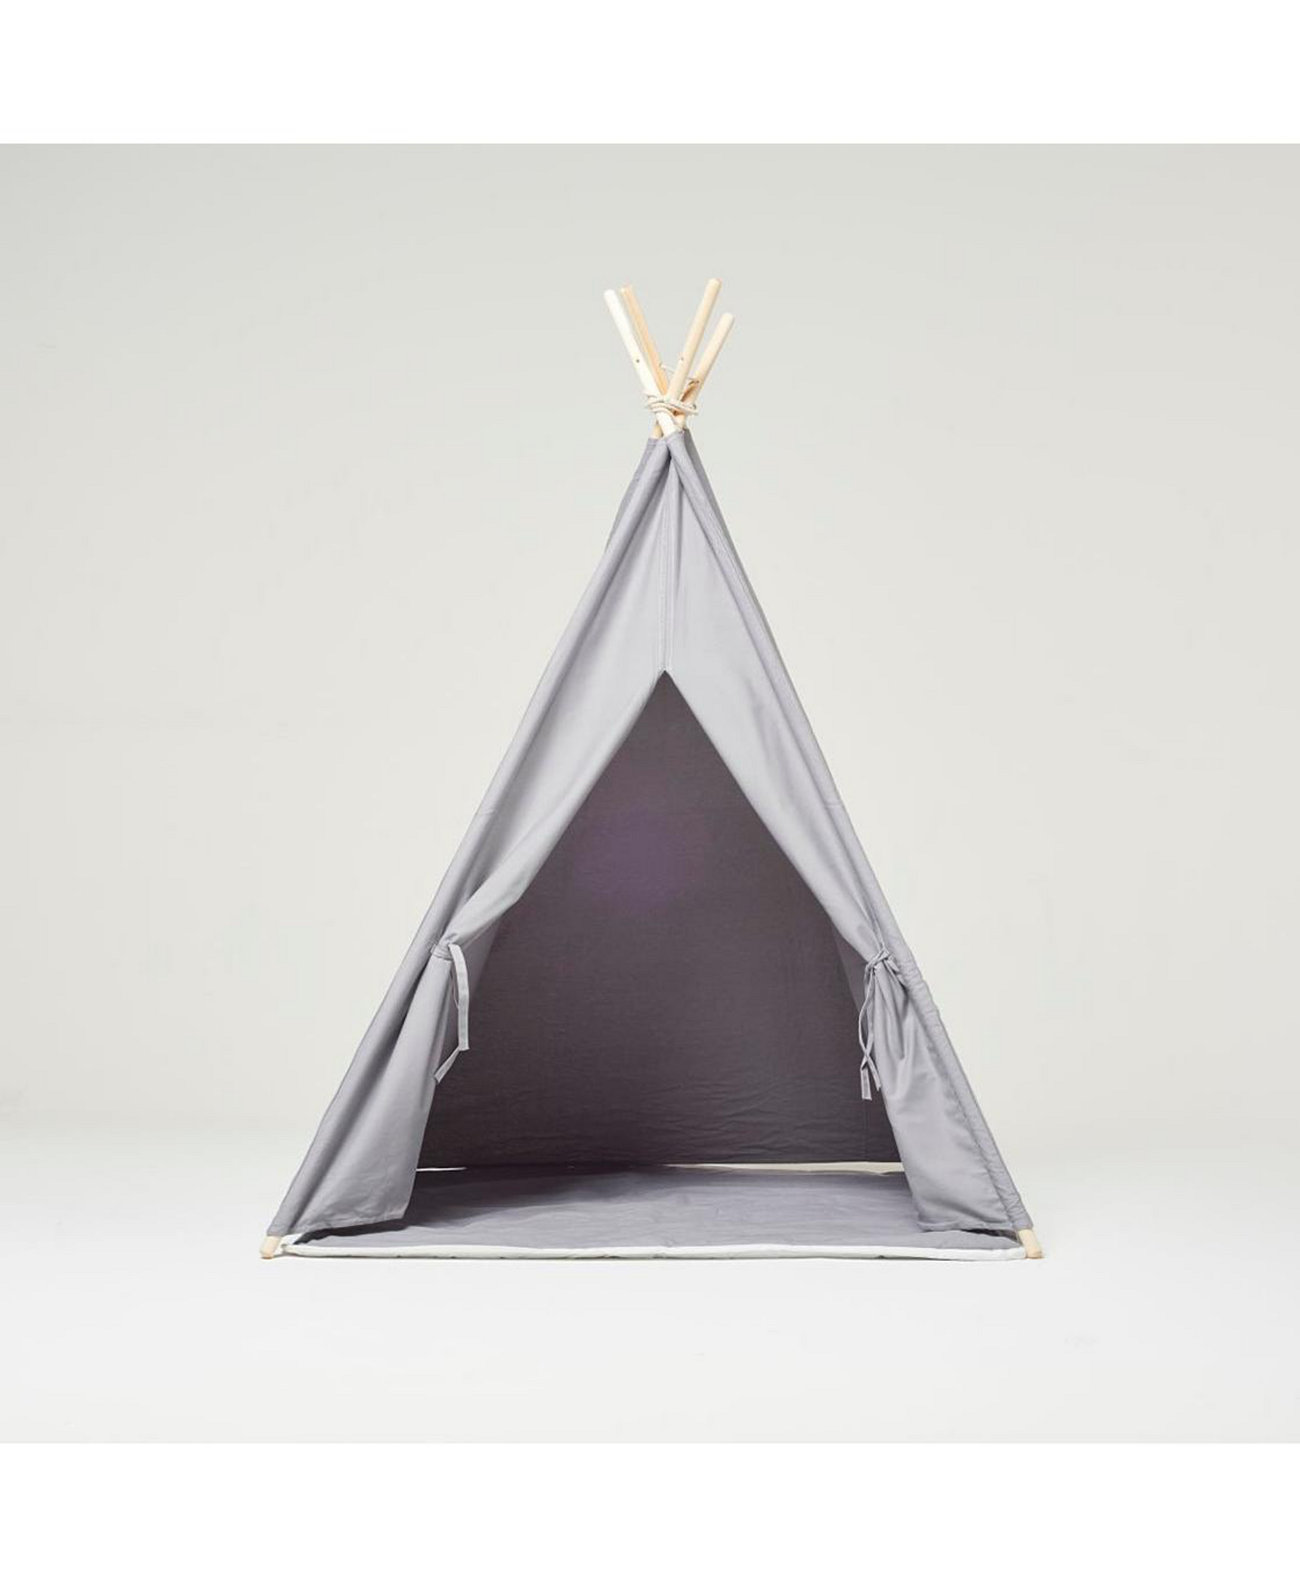 Игровая палатка Типи из хлопкового полотна с мягким ковром серого цвета RocketBaby